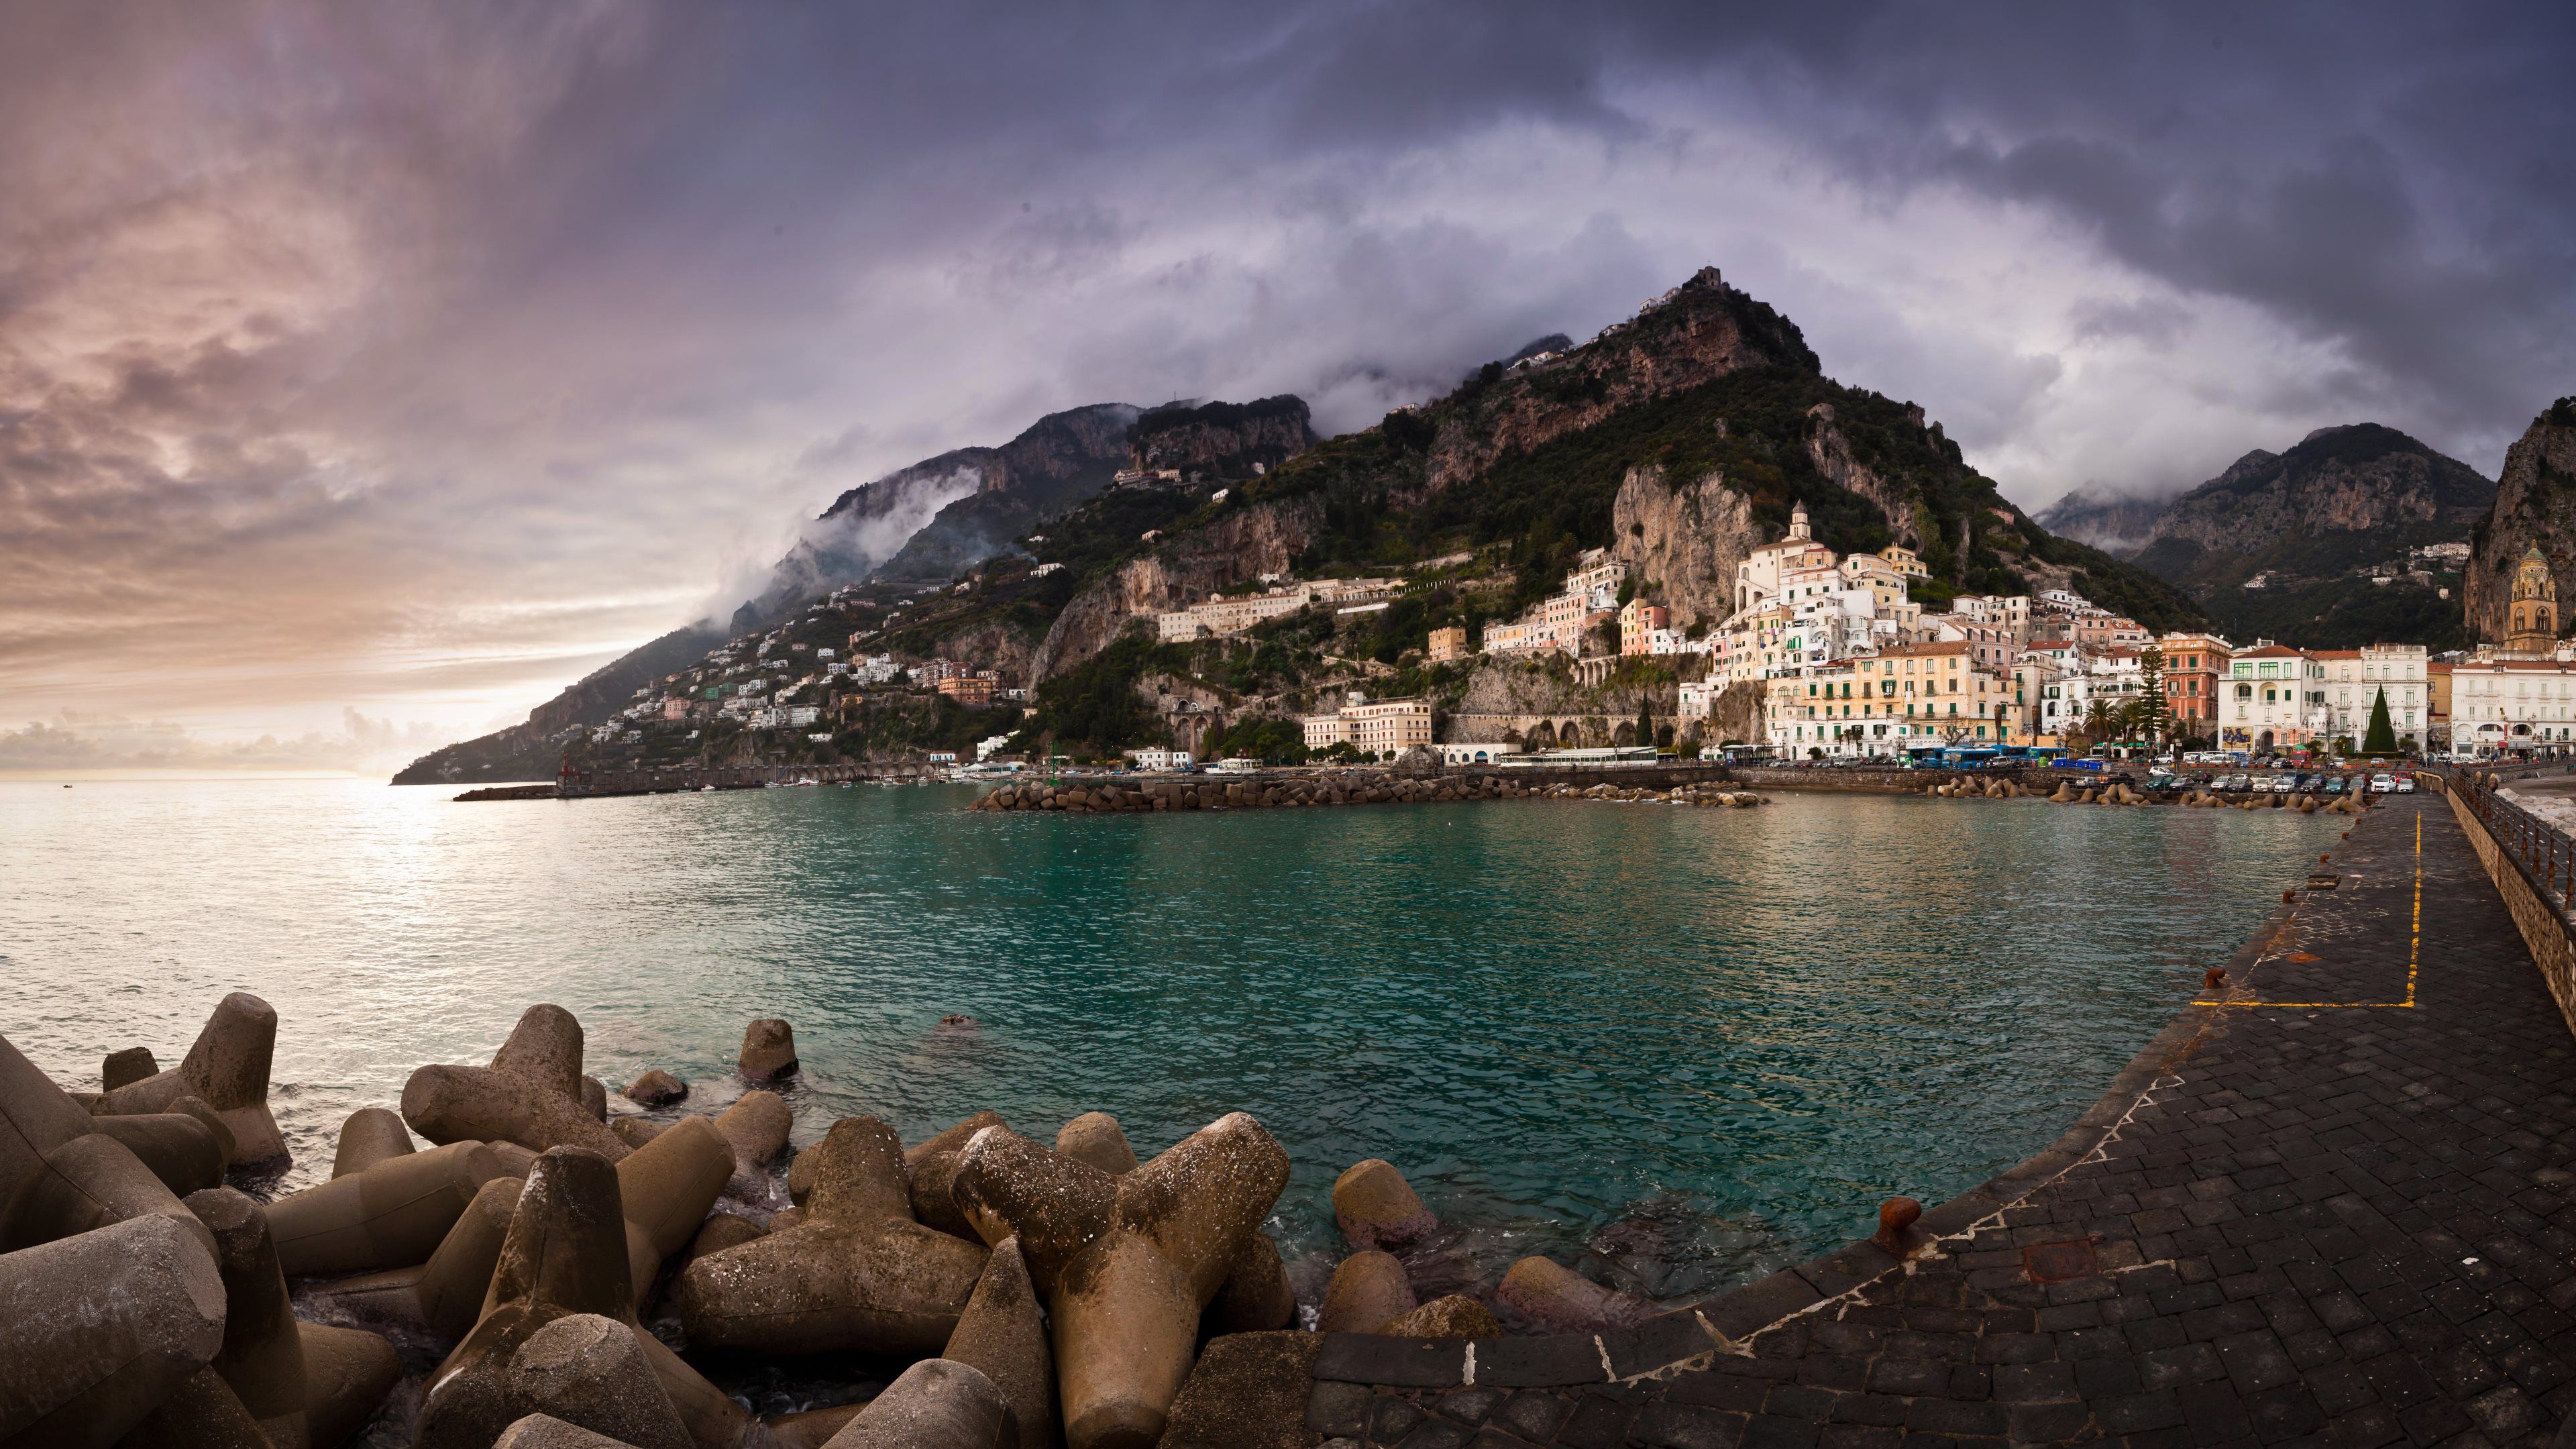 Amalfi HD Wallpaper and Background Image